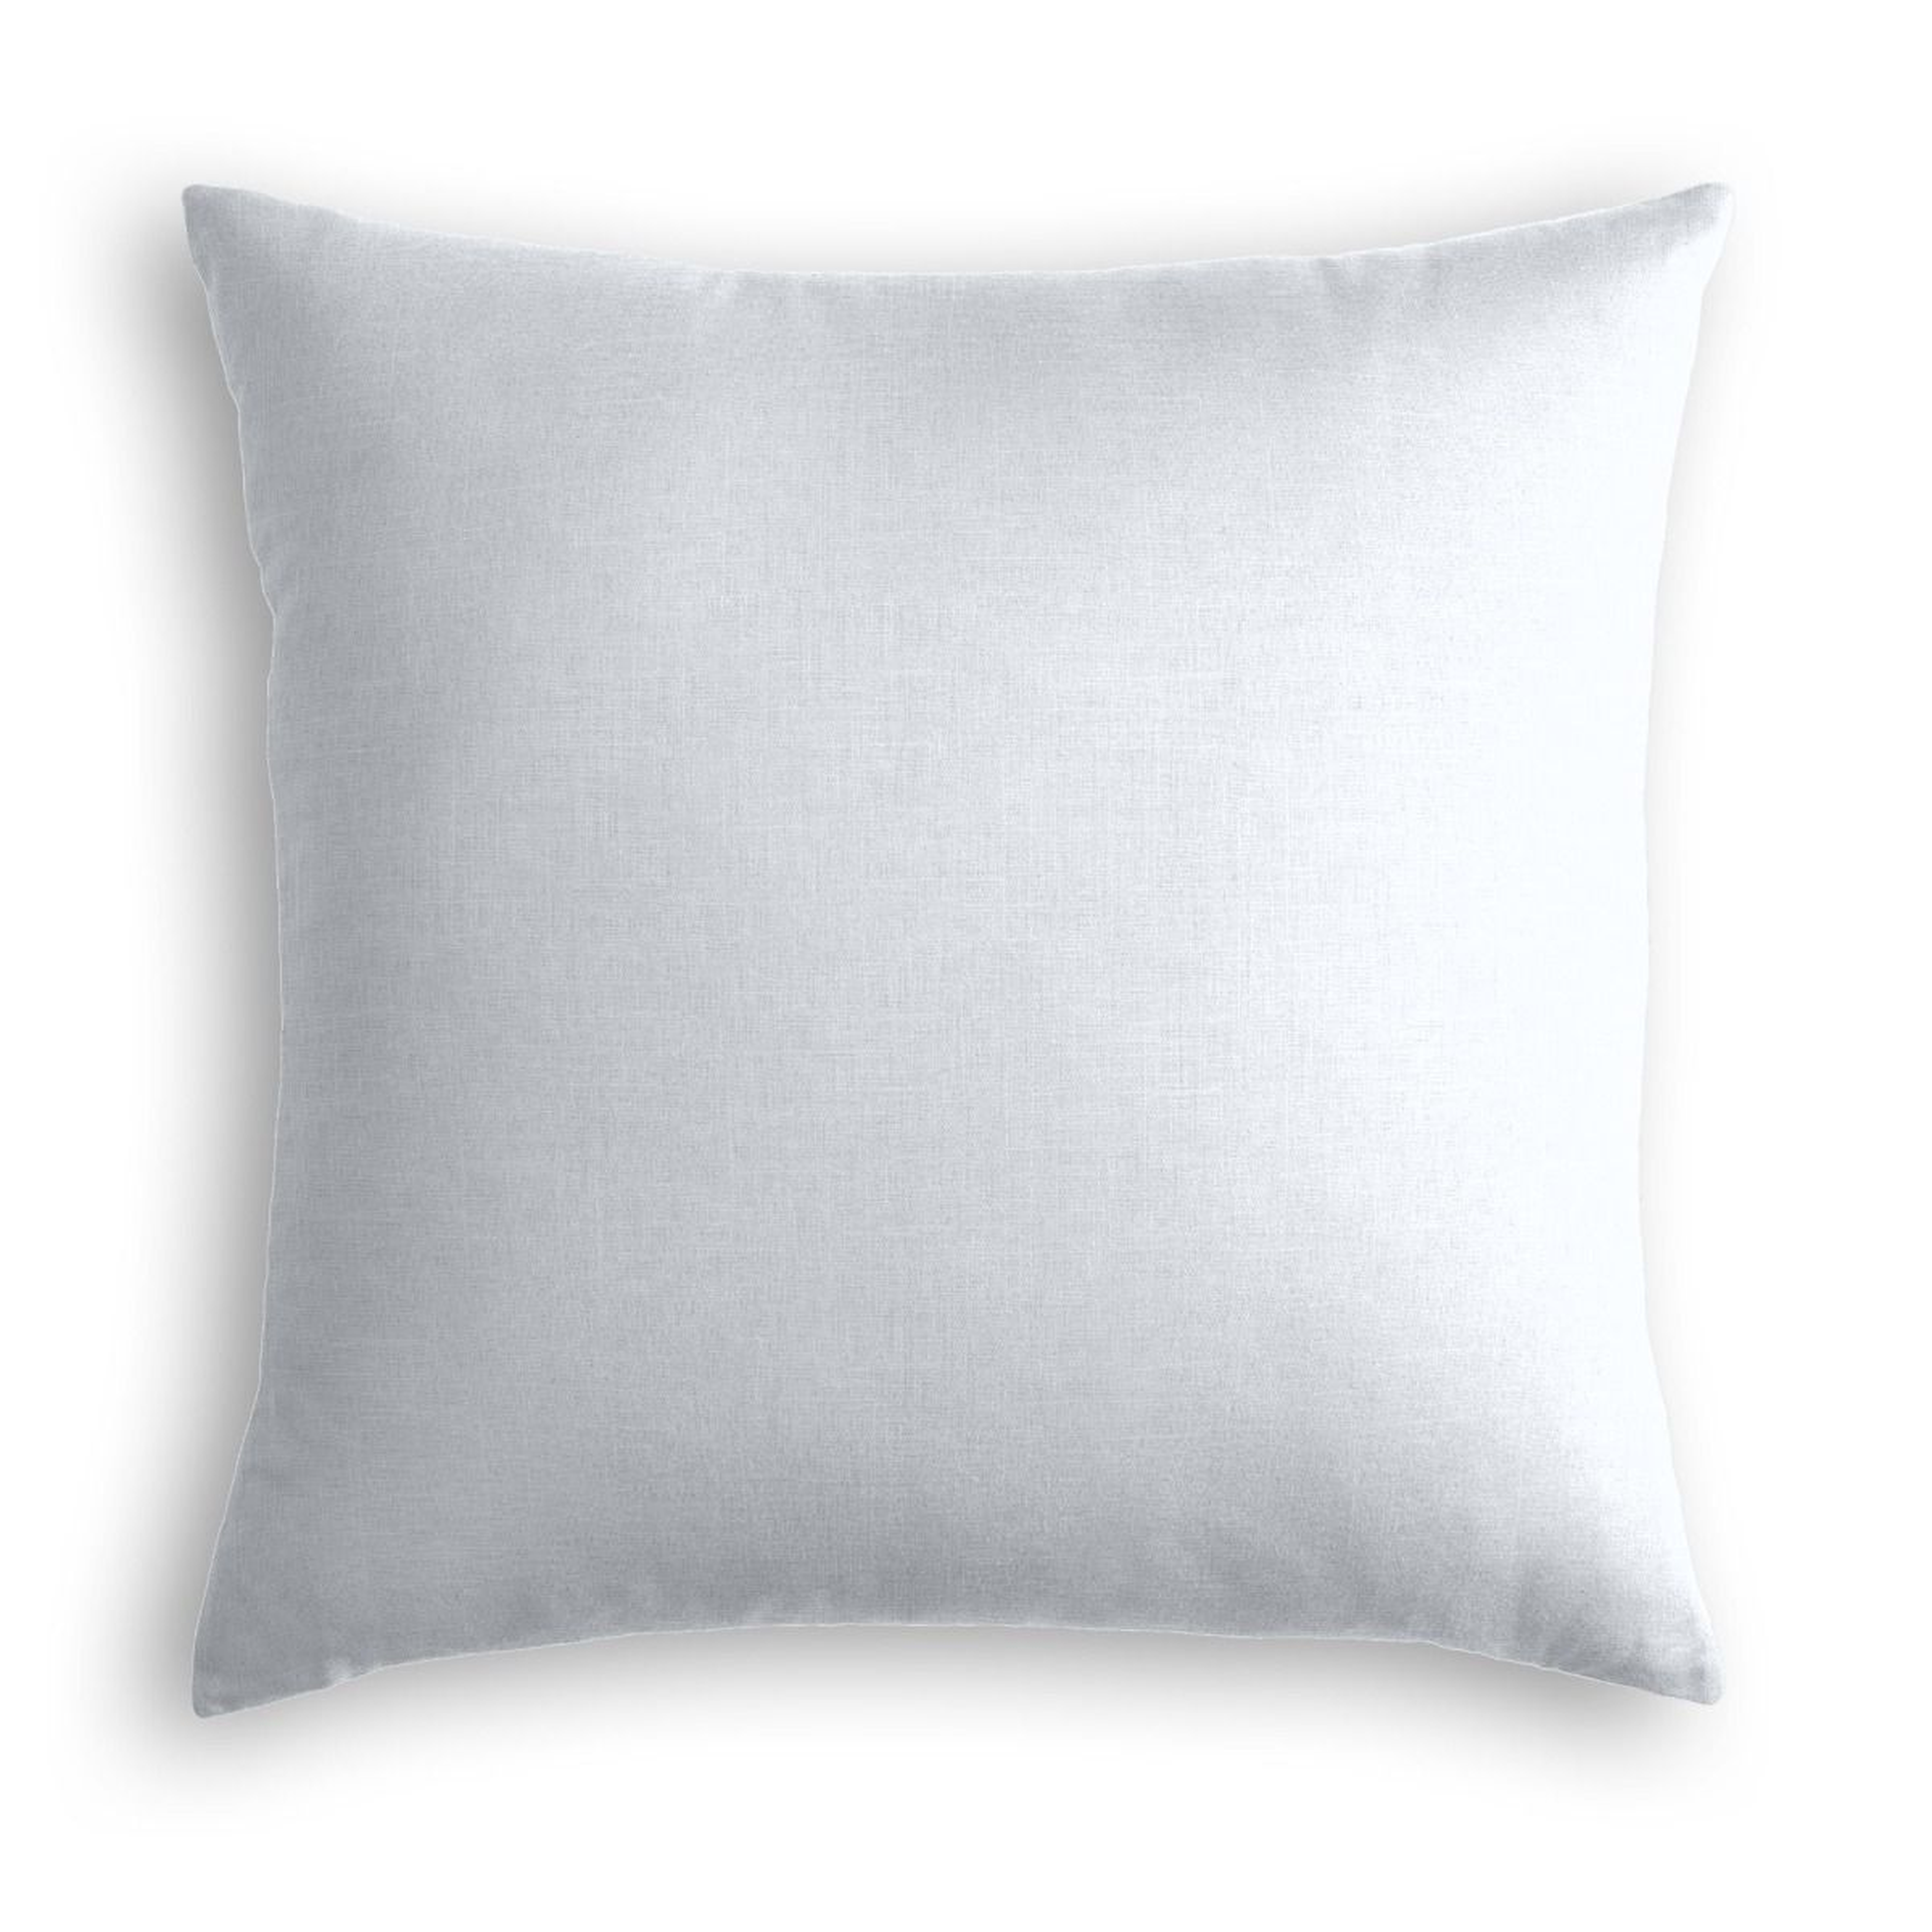 Classic Linen Pillow, Pale Blue, 20" x 20" - Havenly Essentials